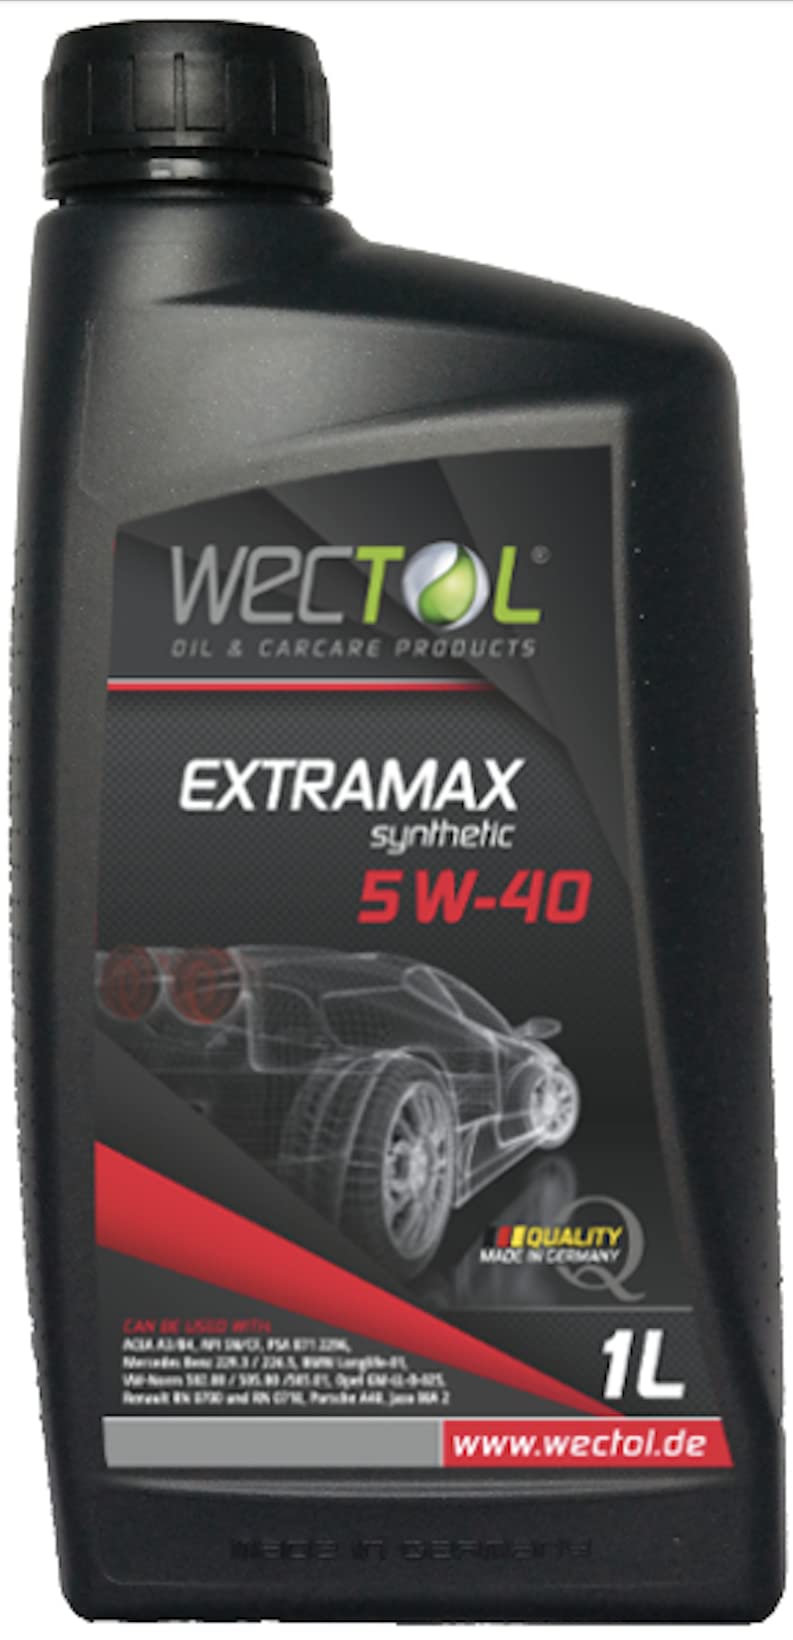 Wectol 5W-40 Extramax Motoröl 5w40 / 1 Liter von WECTOL OIL & CARCARE PRODUCTS